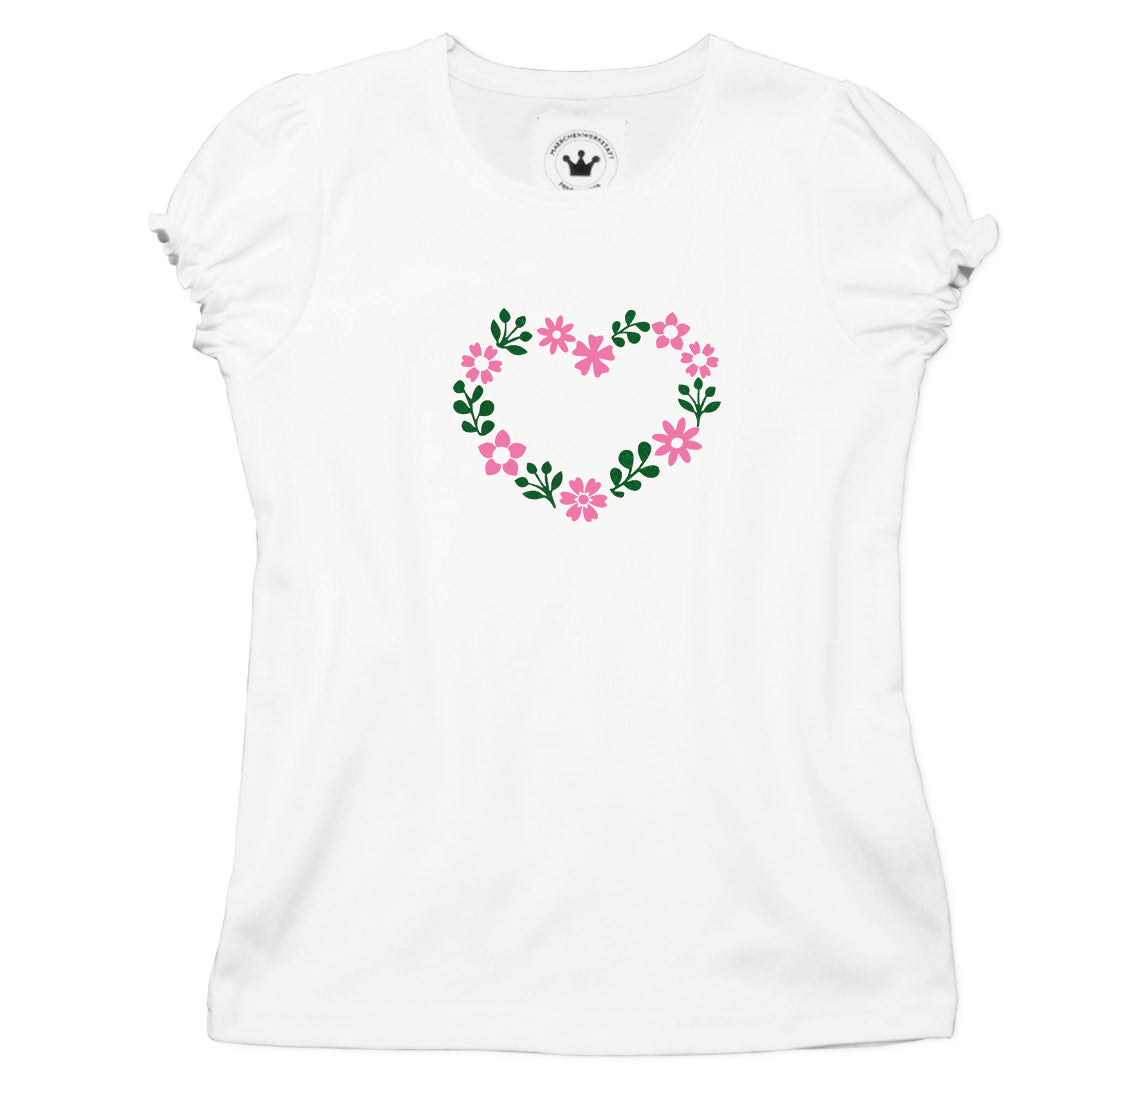 Mädchen Trachten T-Shirt Blumenherz rosa grün